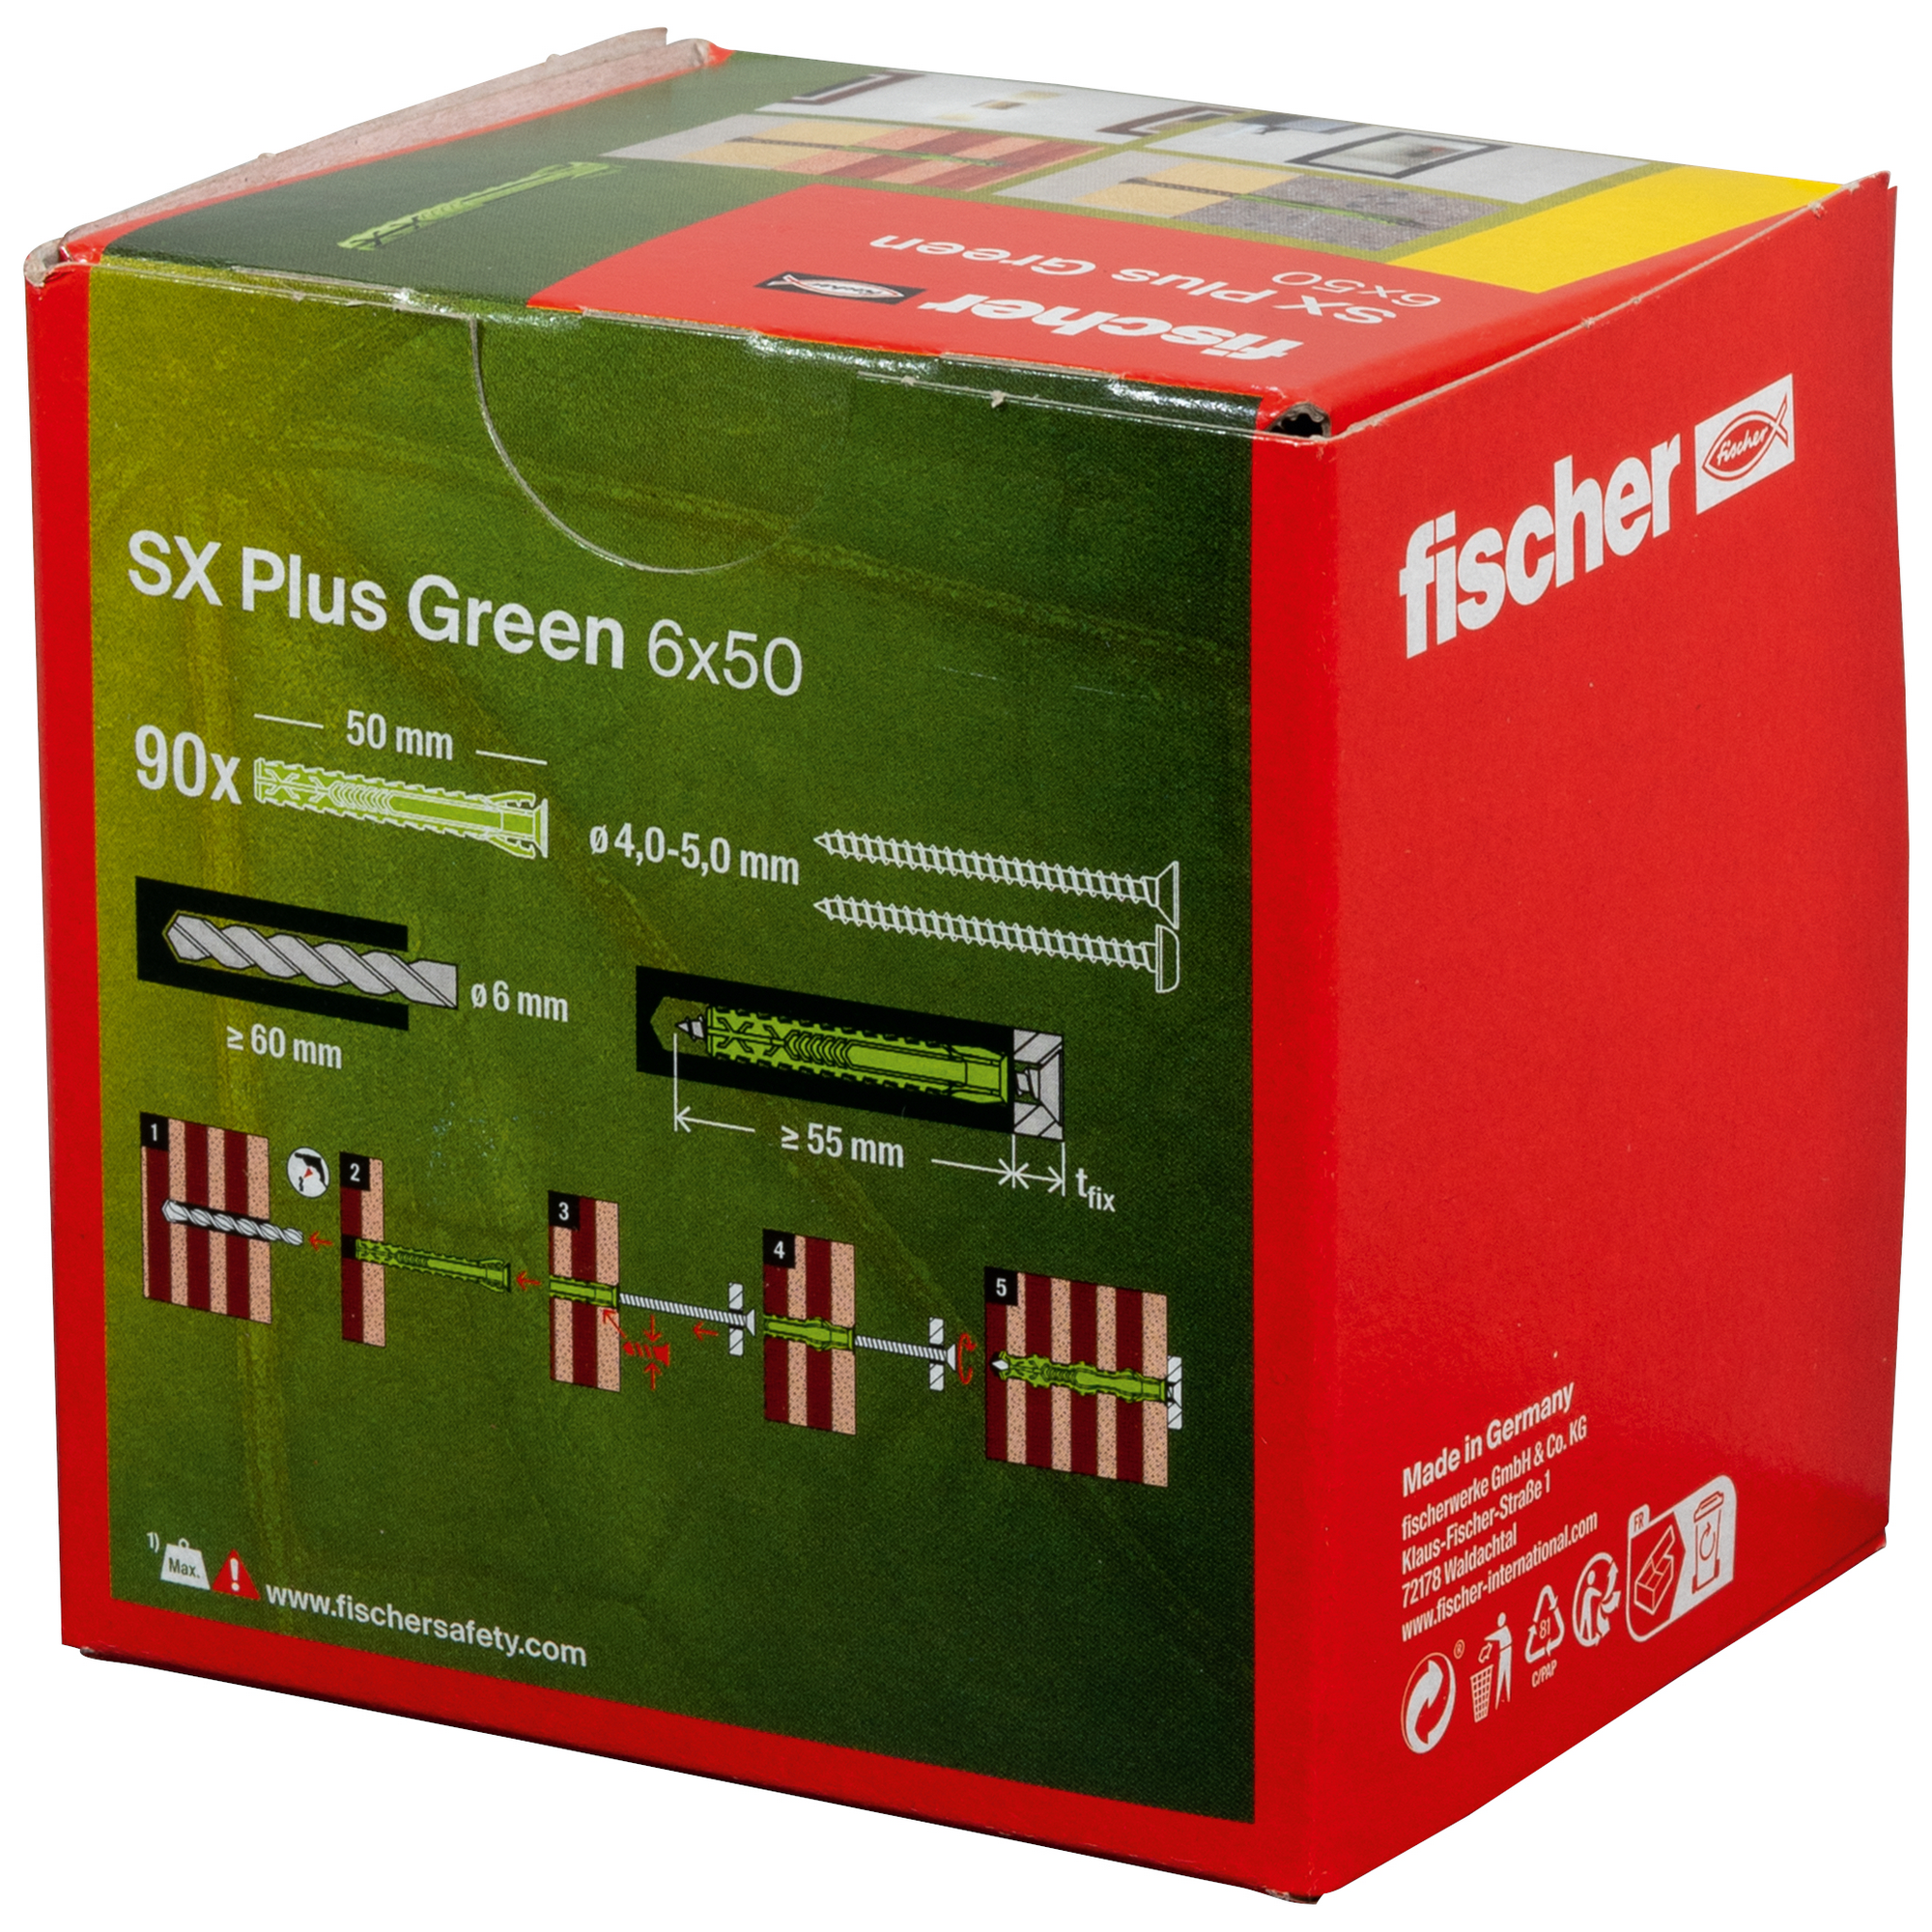 Spreizdübel-Set 'SX Plus Green' Ø 6 x 50 mm, 100-teilig + product picture